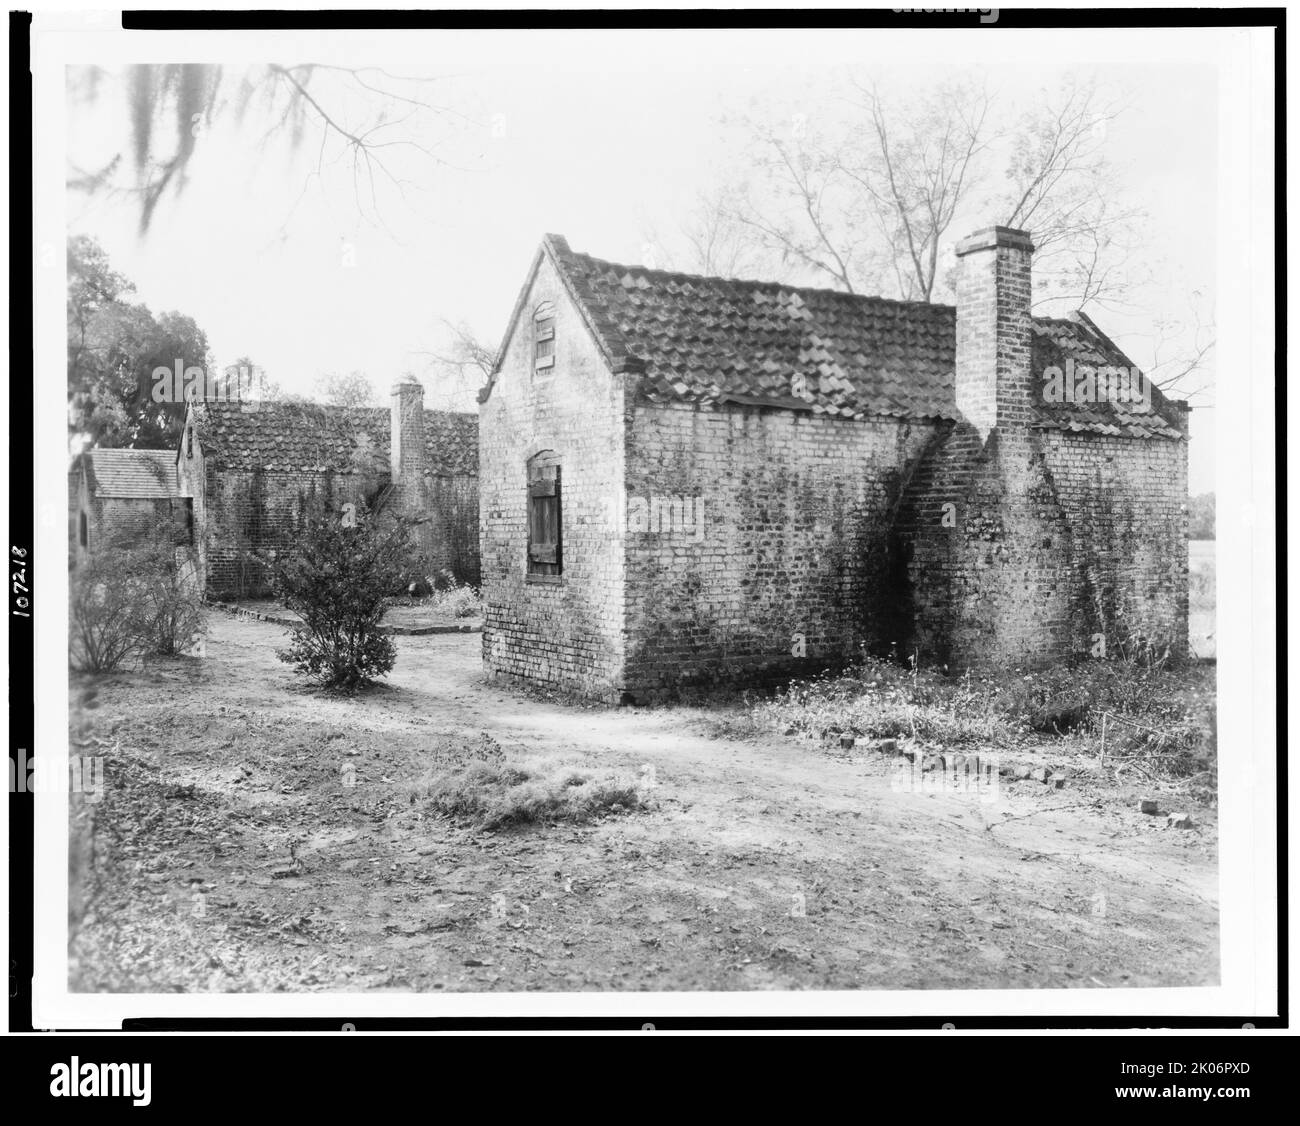 Boone Hall, Gebäude auf dem Gelände, Mount Pleasant vic., Charleston County, South Carolina, 1938. (Backstein-Sklavenkabinen in der Slave Street, Boone Hall Plantation, erbaut zwischen 1790 und 1810). Stockfoto